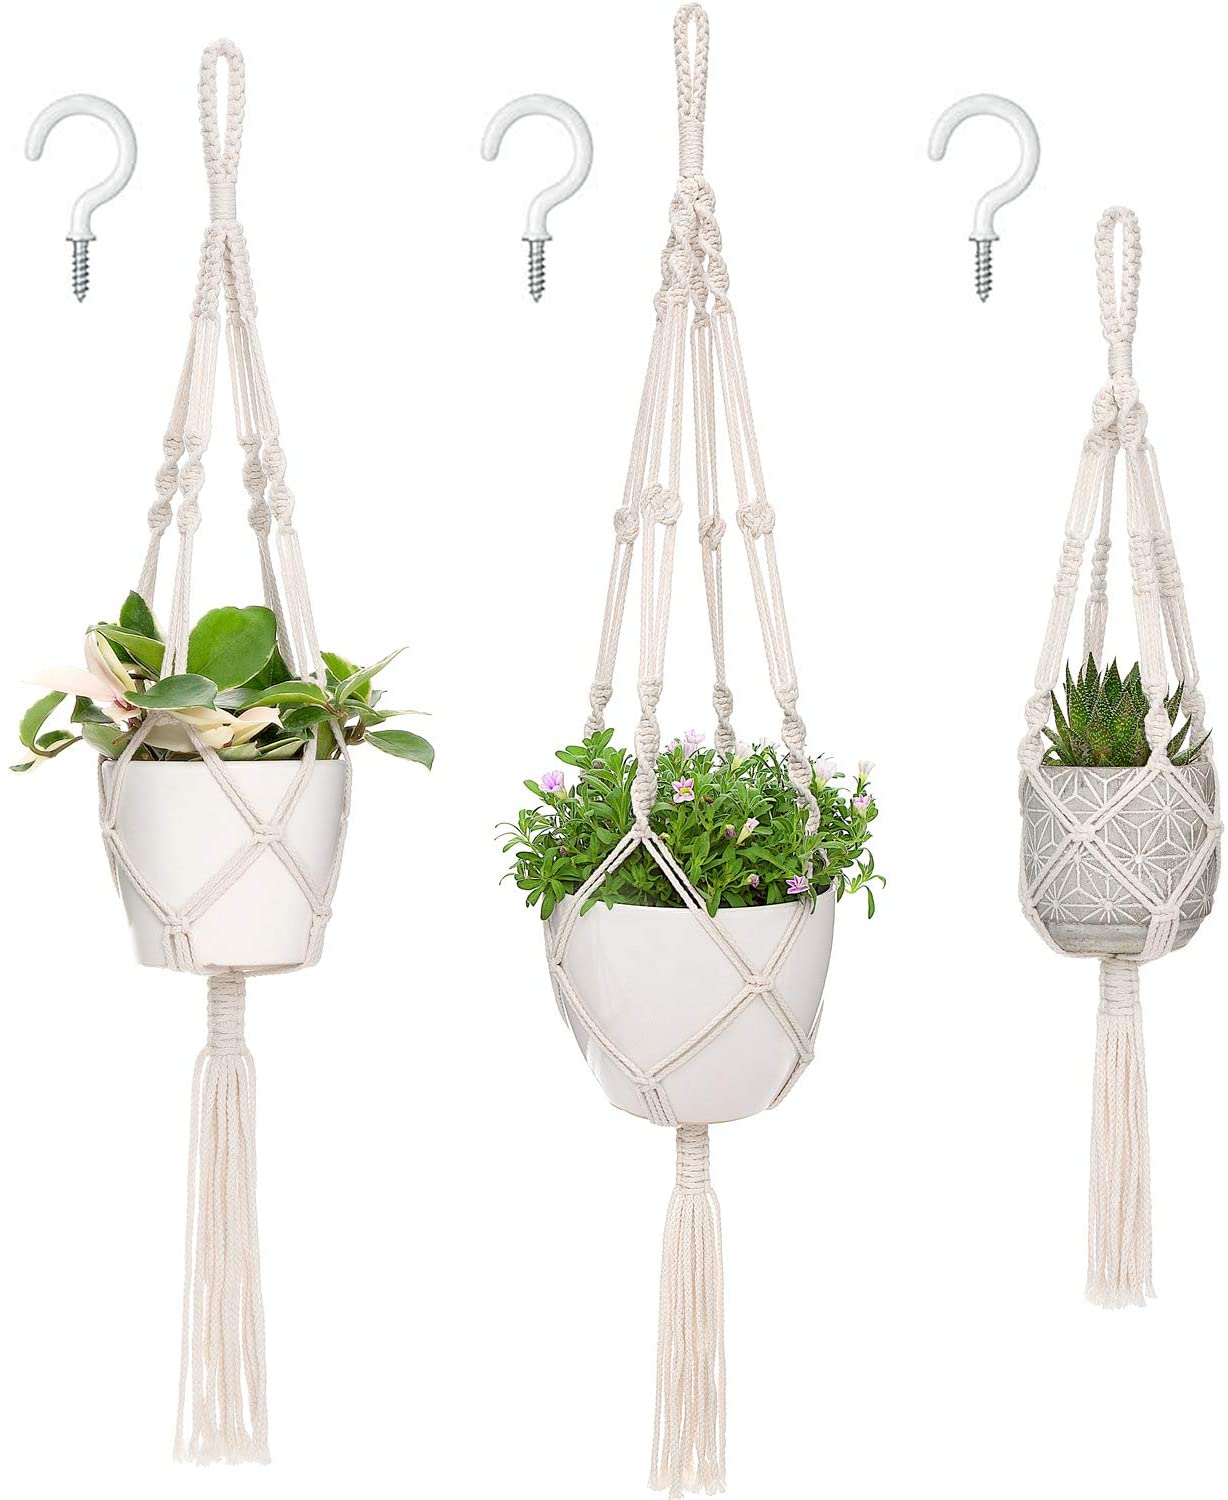 hanging plants indoors